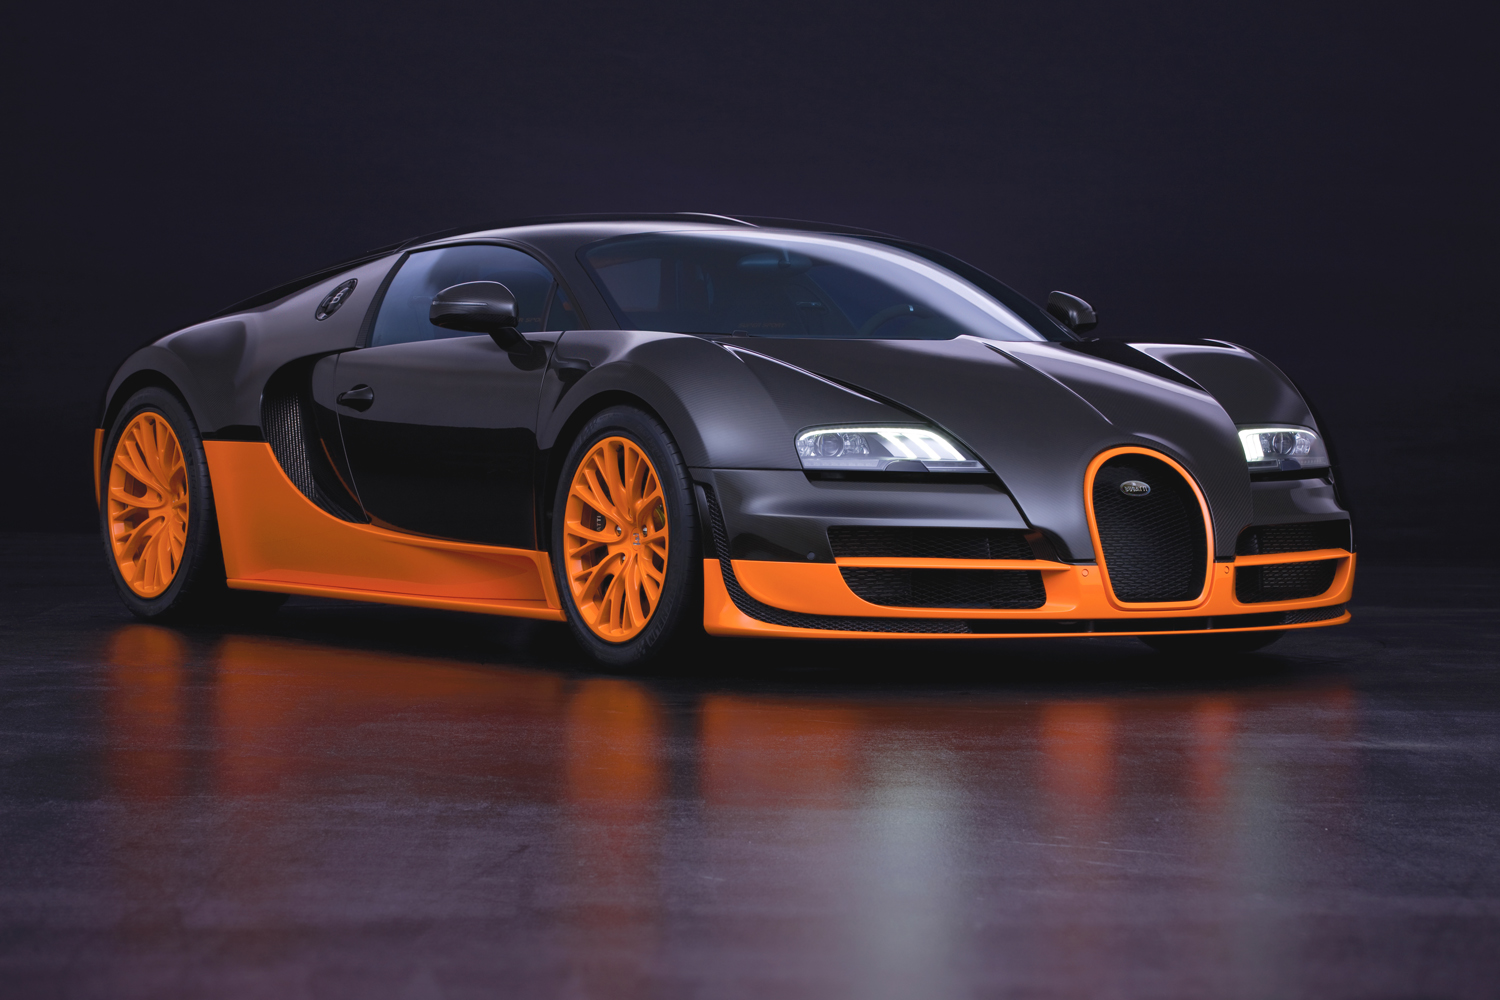 001_Bugatti_Veyron_16.4_Super_Sport_World_Record_Edition